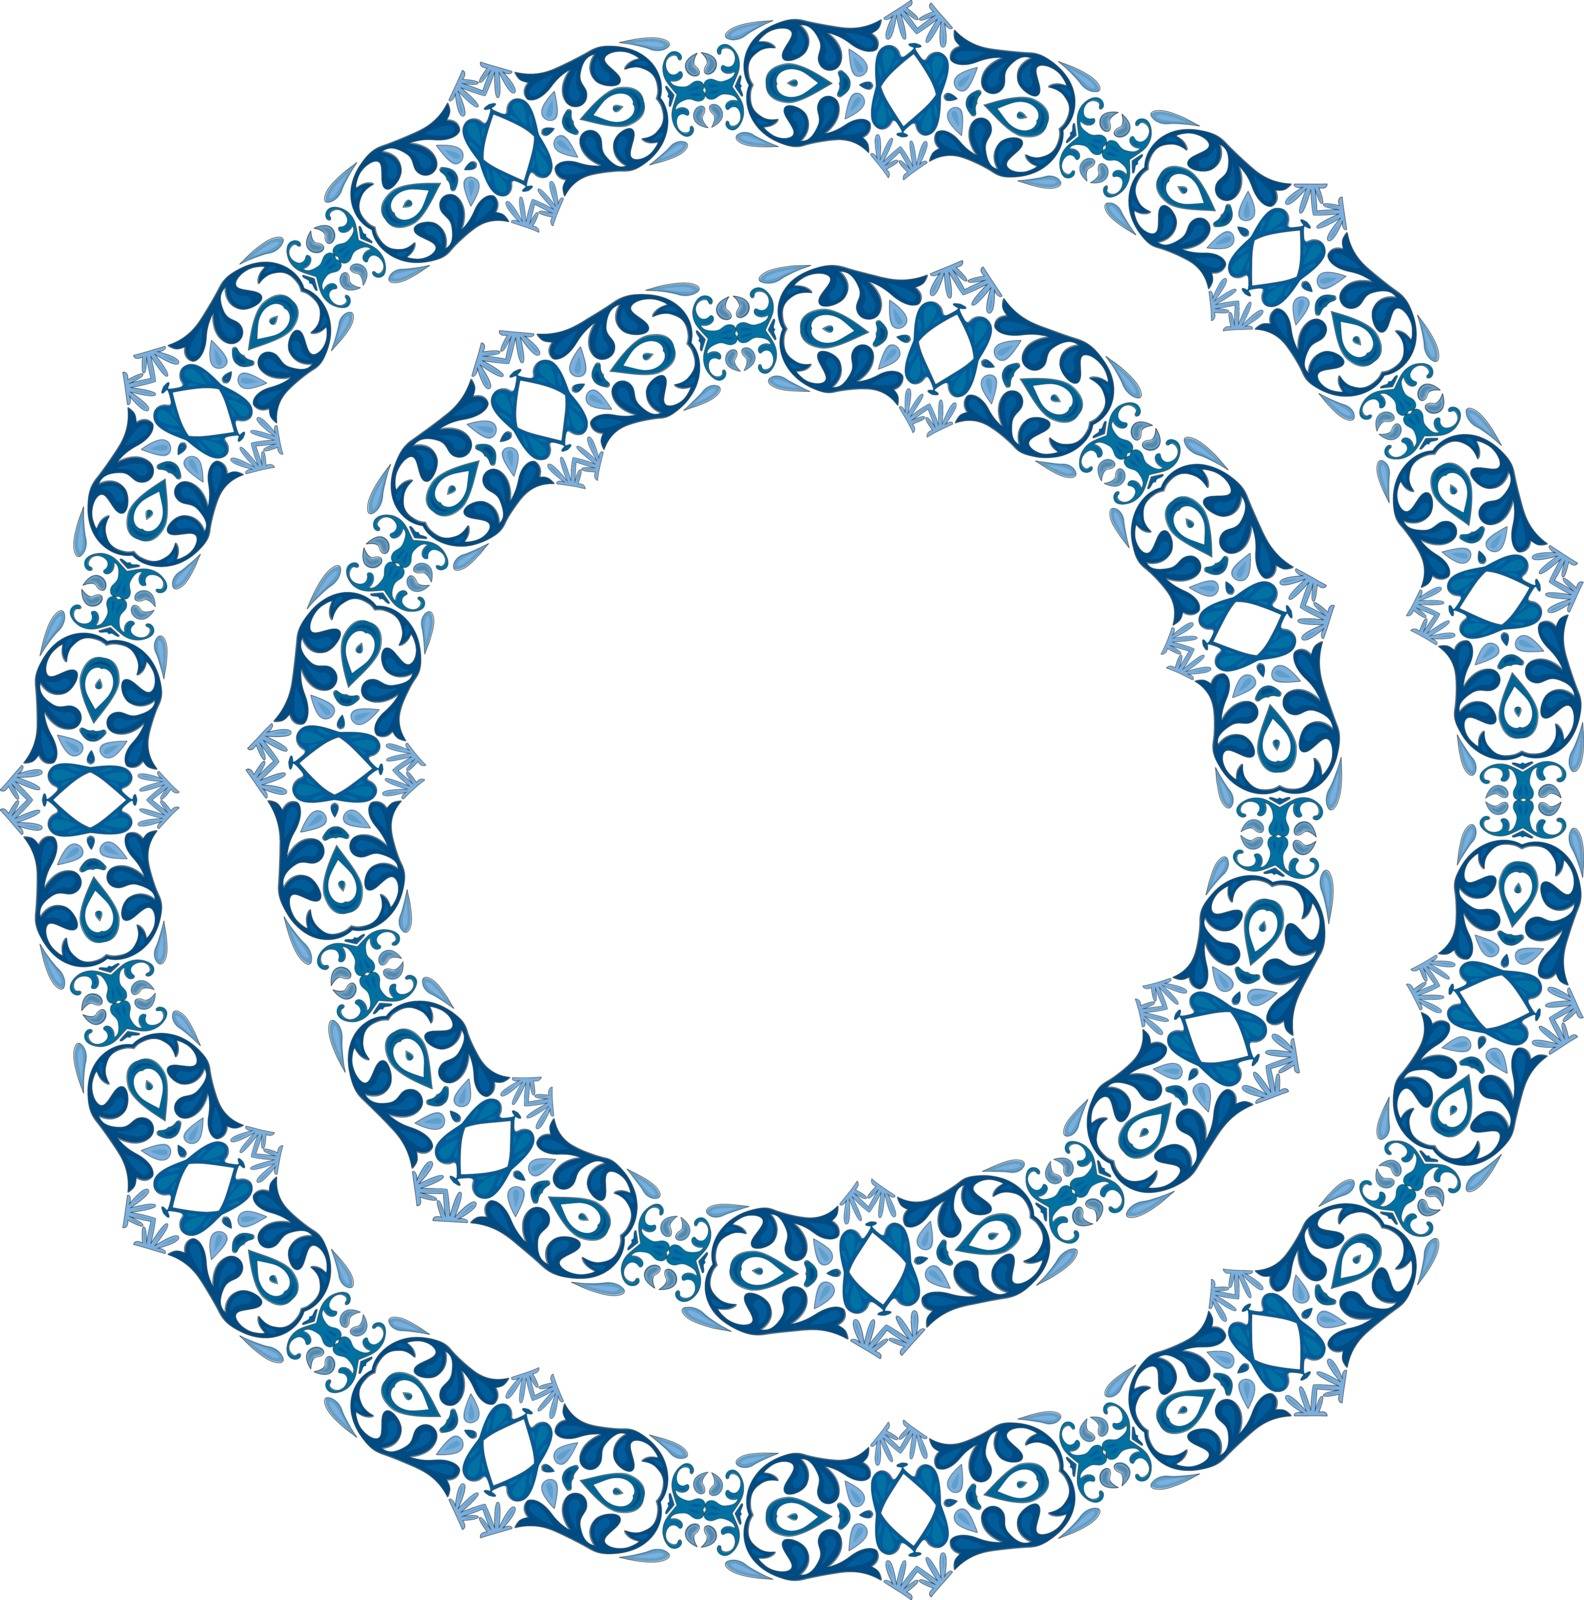 Decorative circles by nahhan